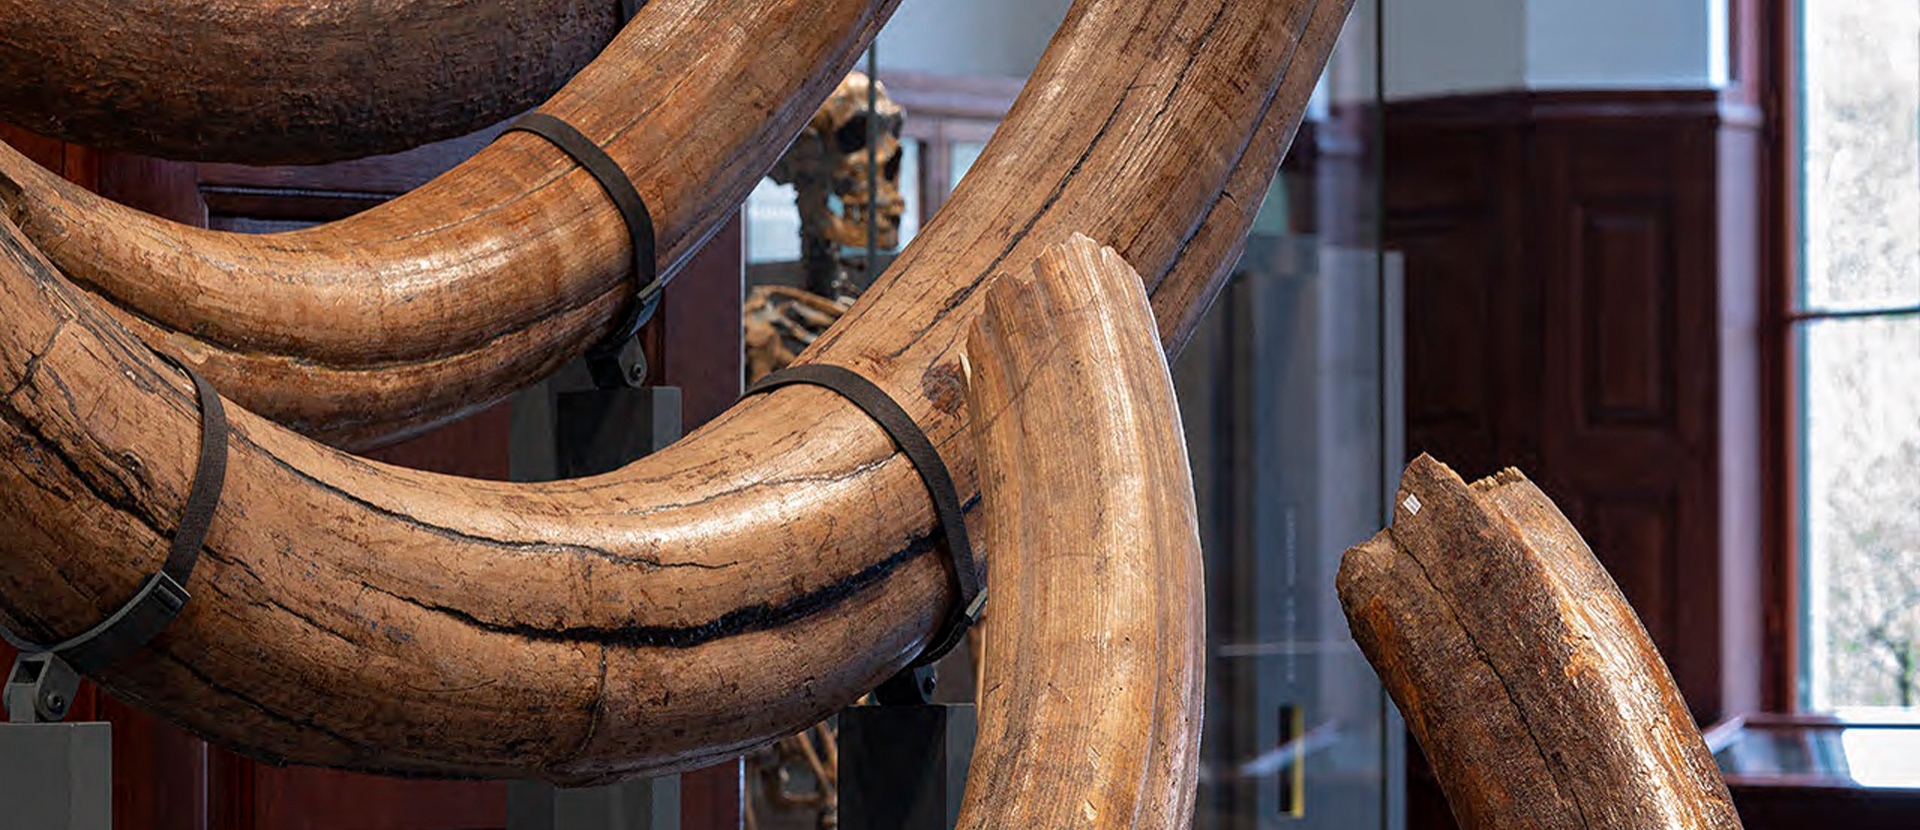 Große, schwere Mammutzähne fixiert in Stahlhalterungen, entwickelt von molitor GmbH